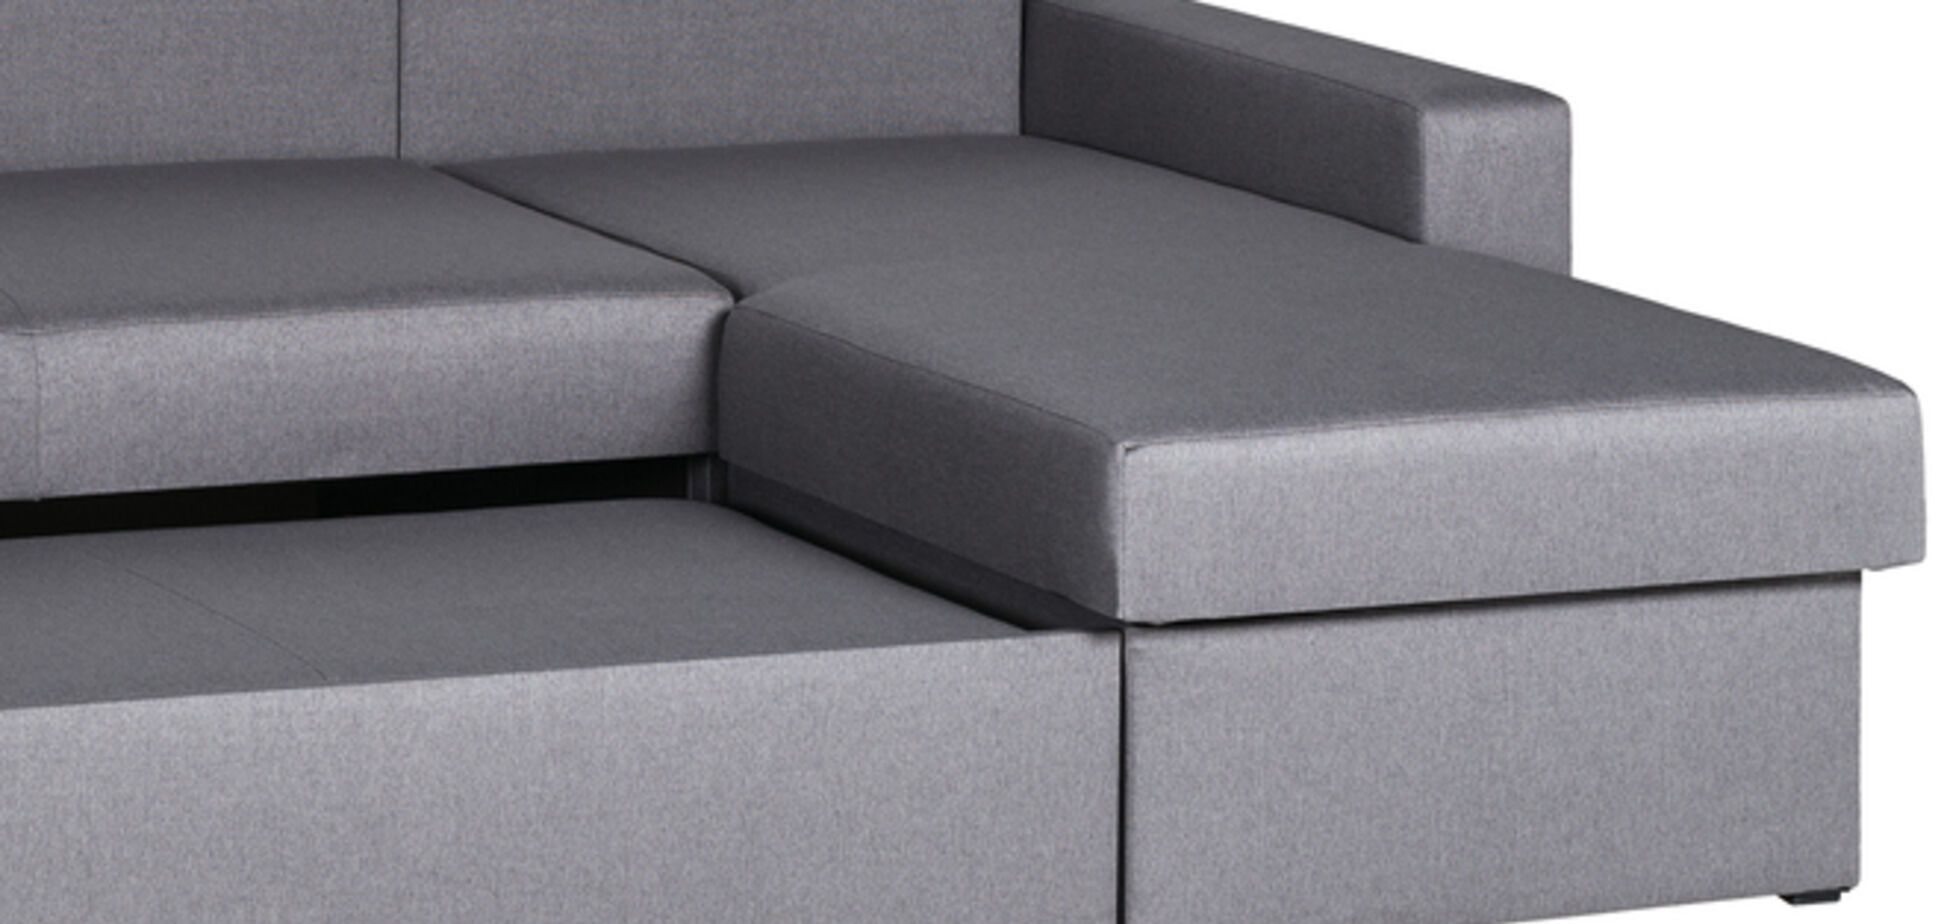 Как выбрать диван: 5 признаков качественной мебели